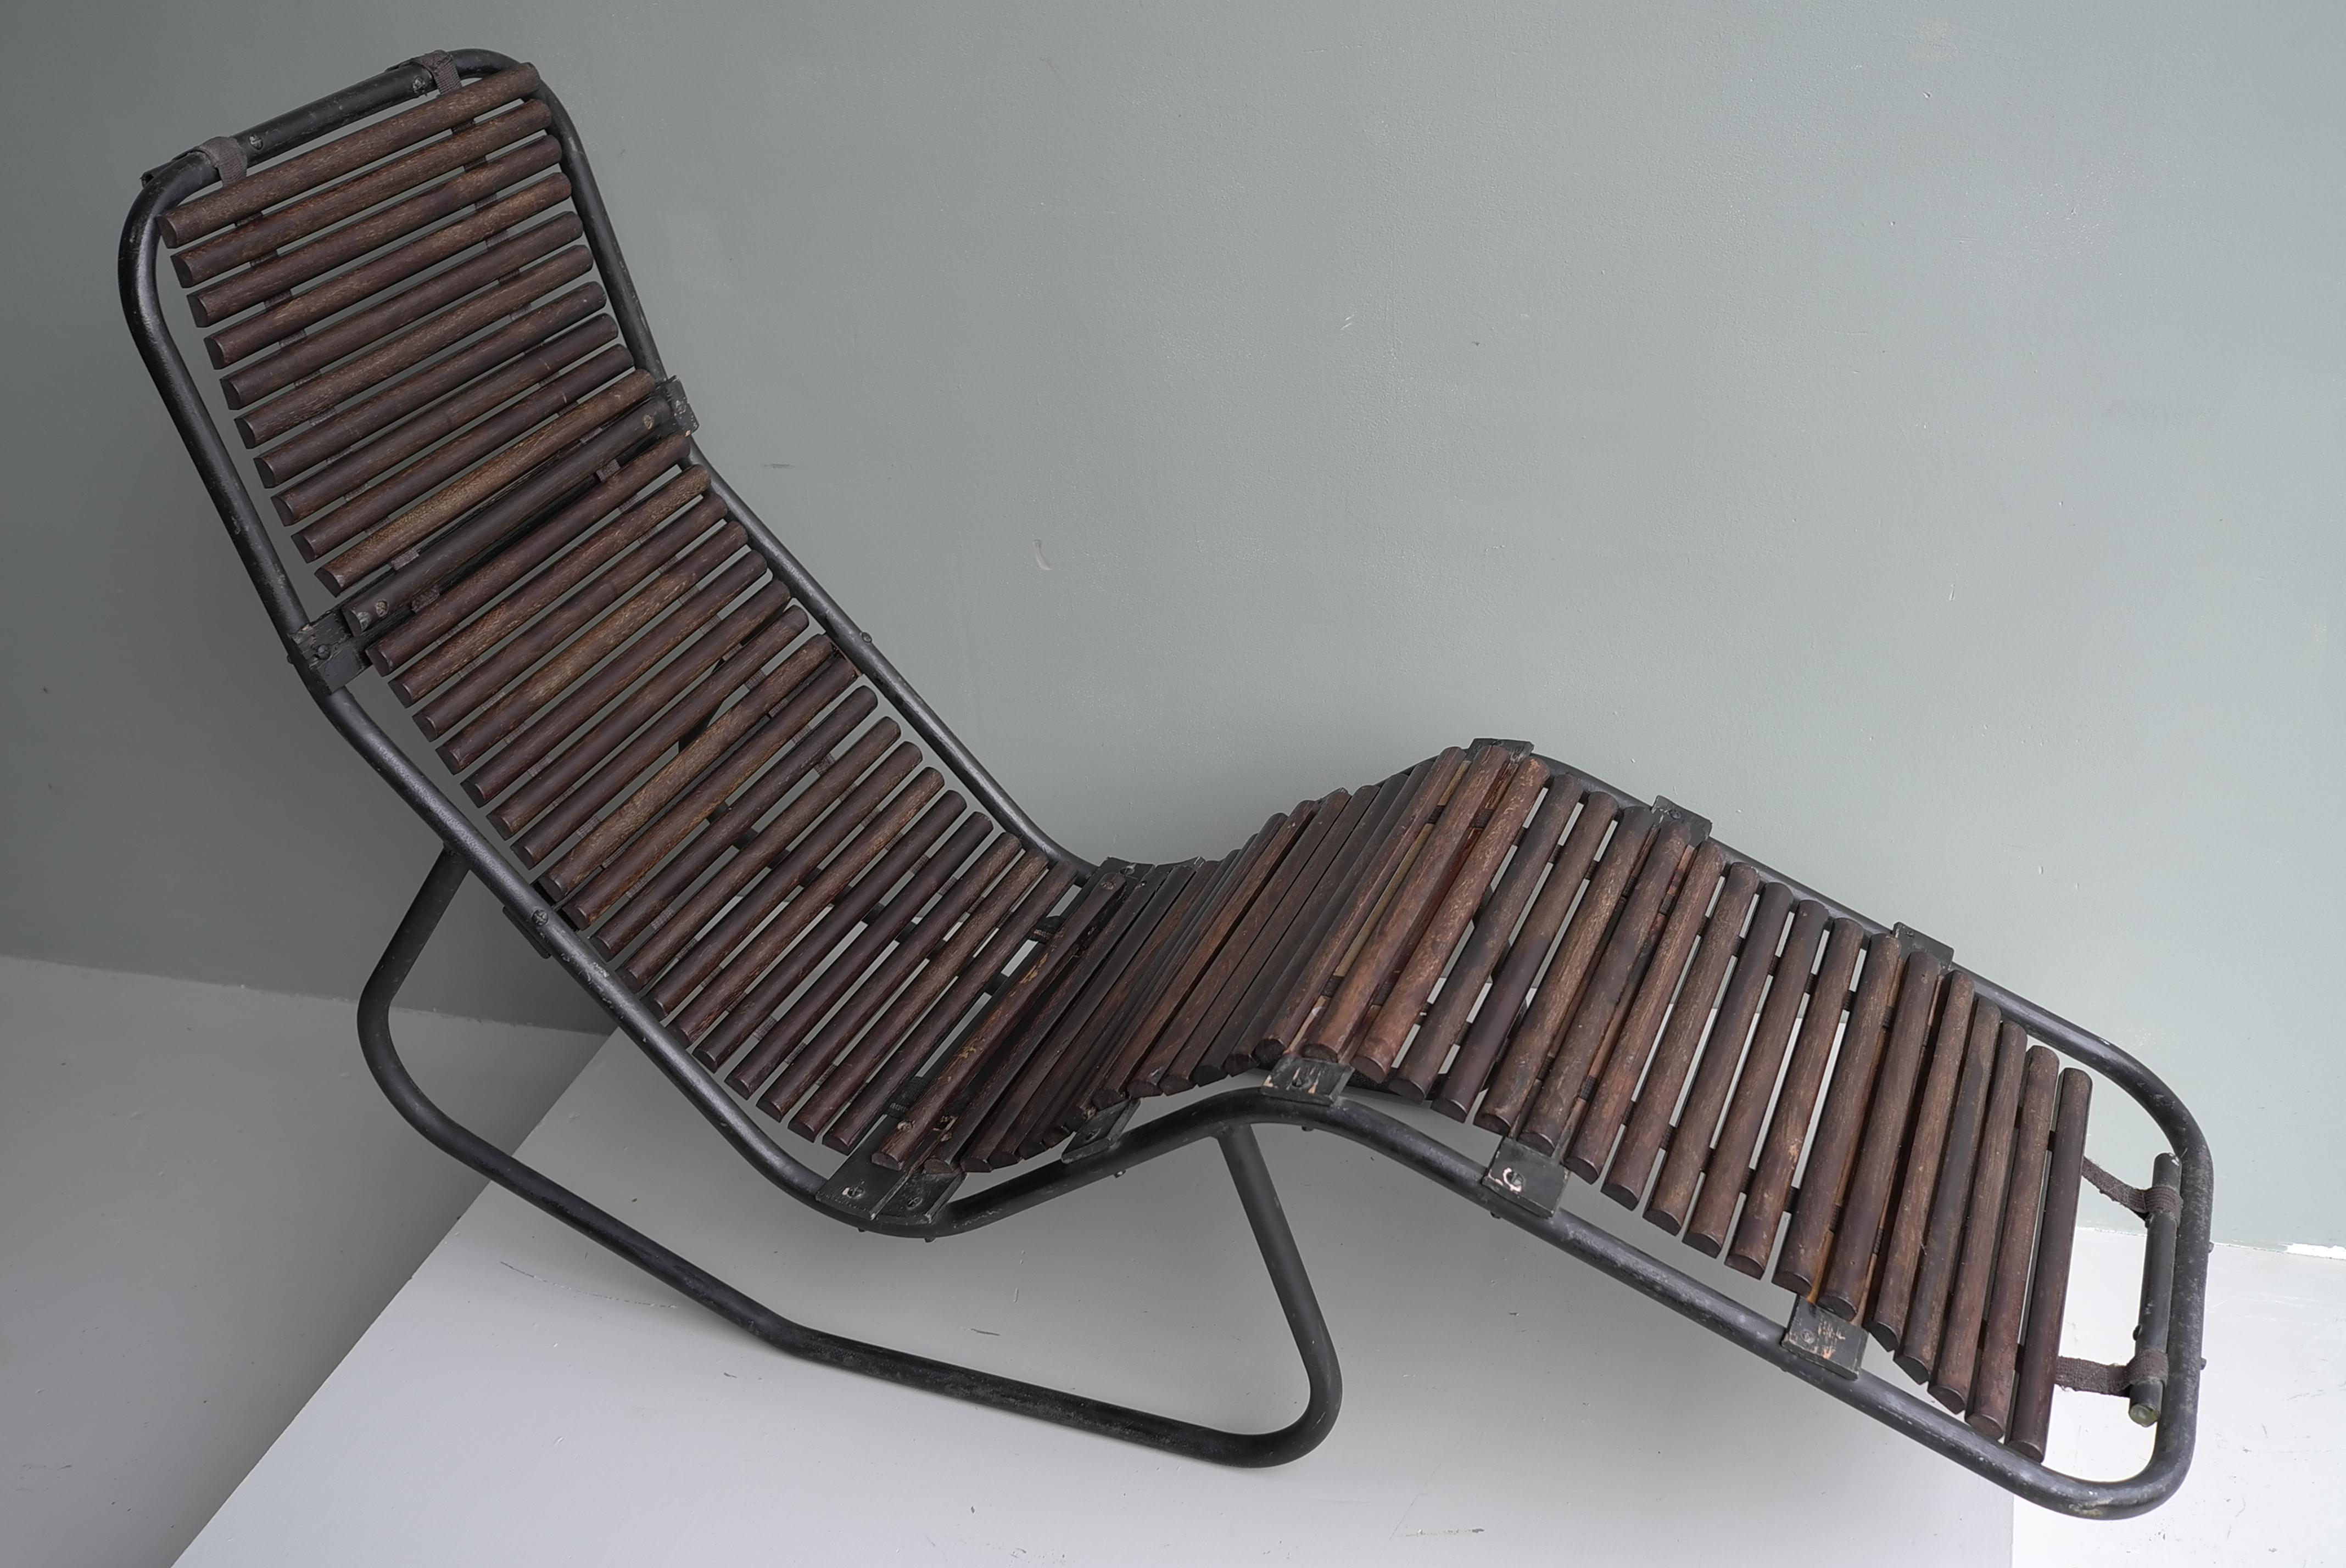 Chaise longue aus Stahlrohr und Hartholz, Frankreich 1940er Jahre.

Dieser einzigartige Loungesessel hat eine normale und eine Liegeposition.